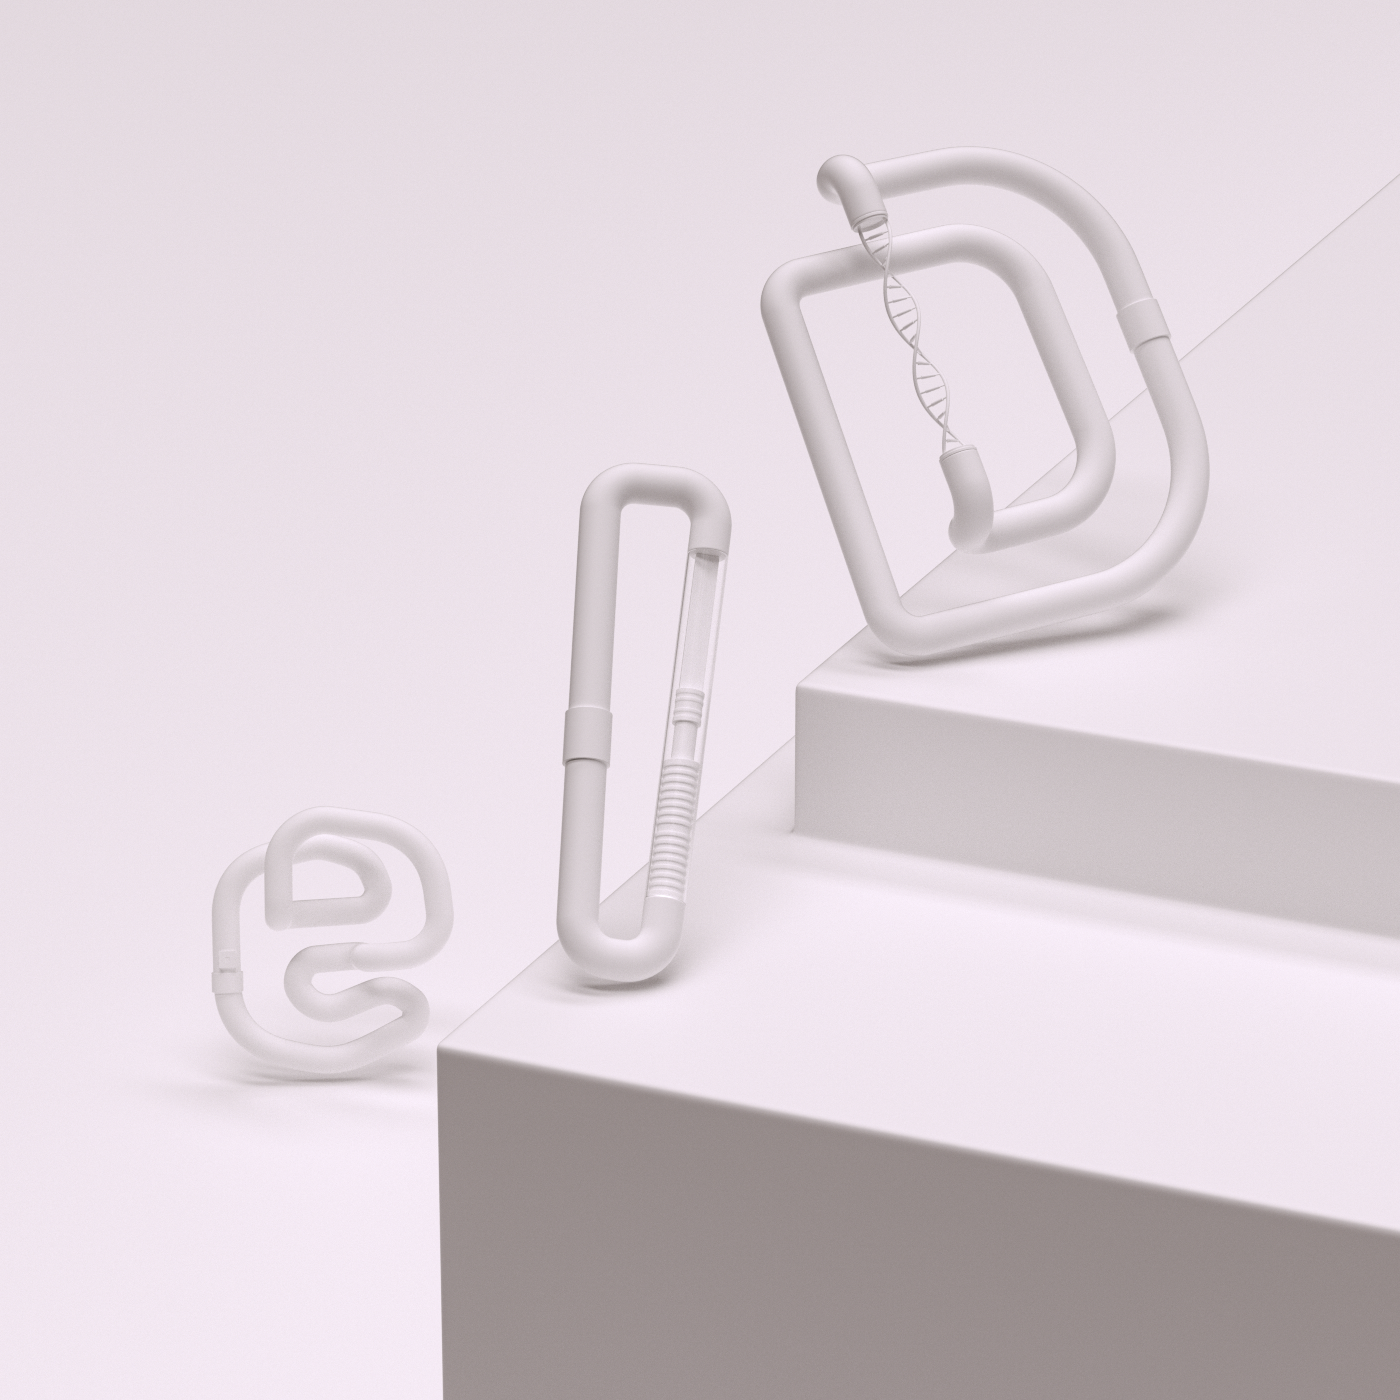 Health ID pasport digital future CGI type lettering minimal implant